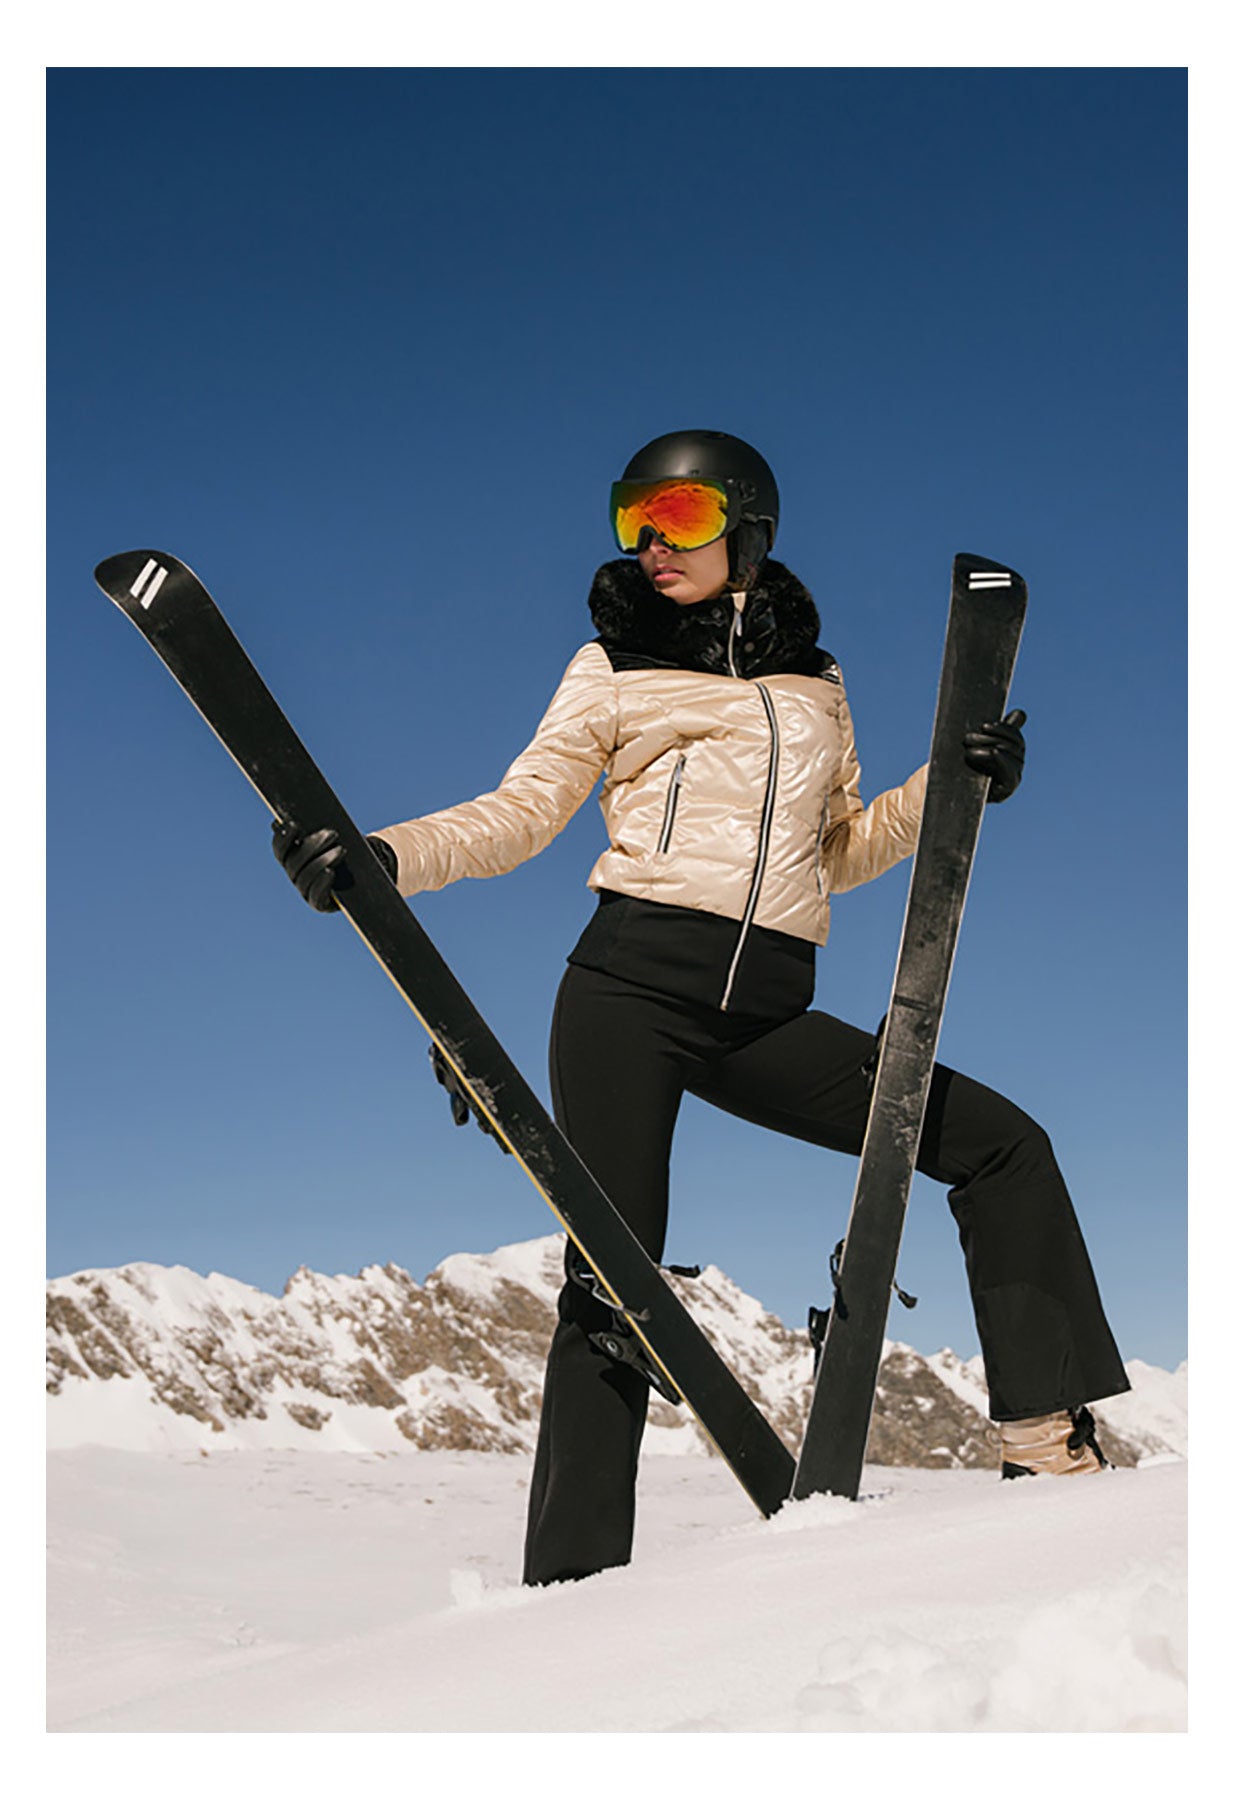 Duvillard Candice Gold Ski Jacket with Faux Fur Trim